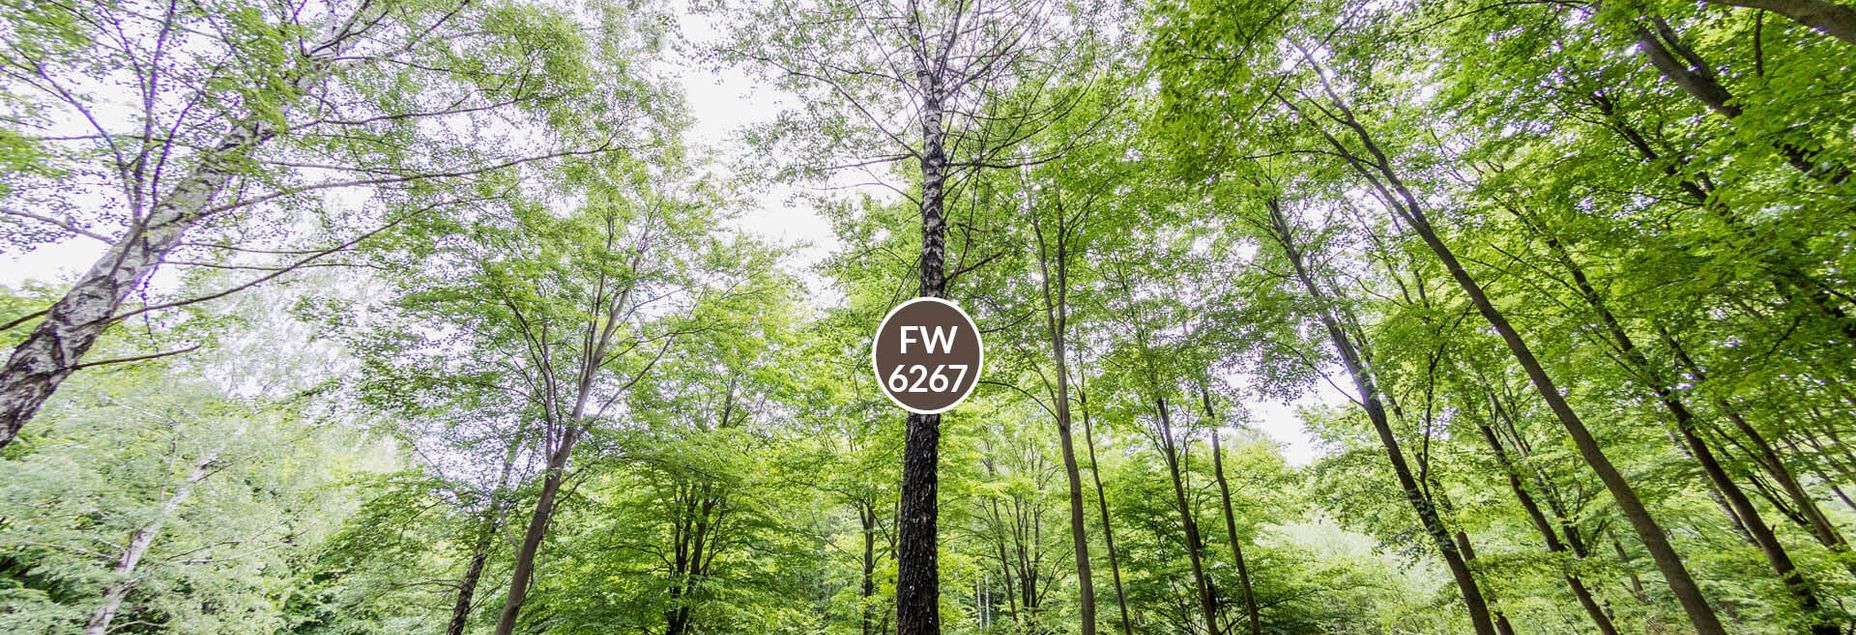 Baum FW 6267 - Fisheyeperspektive